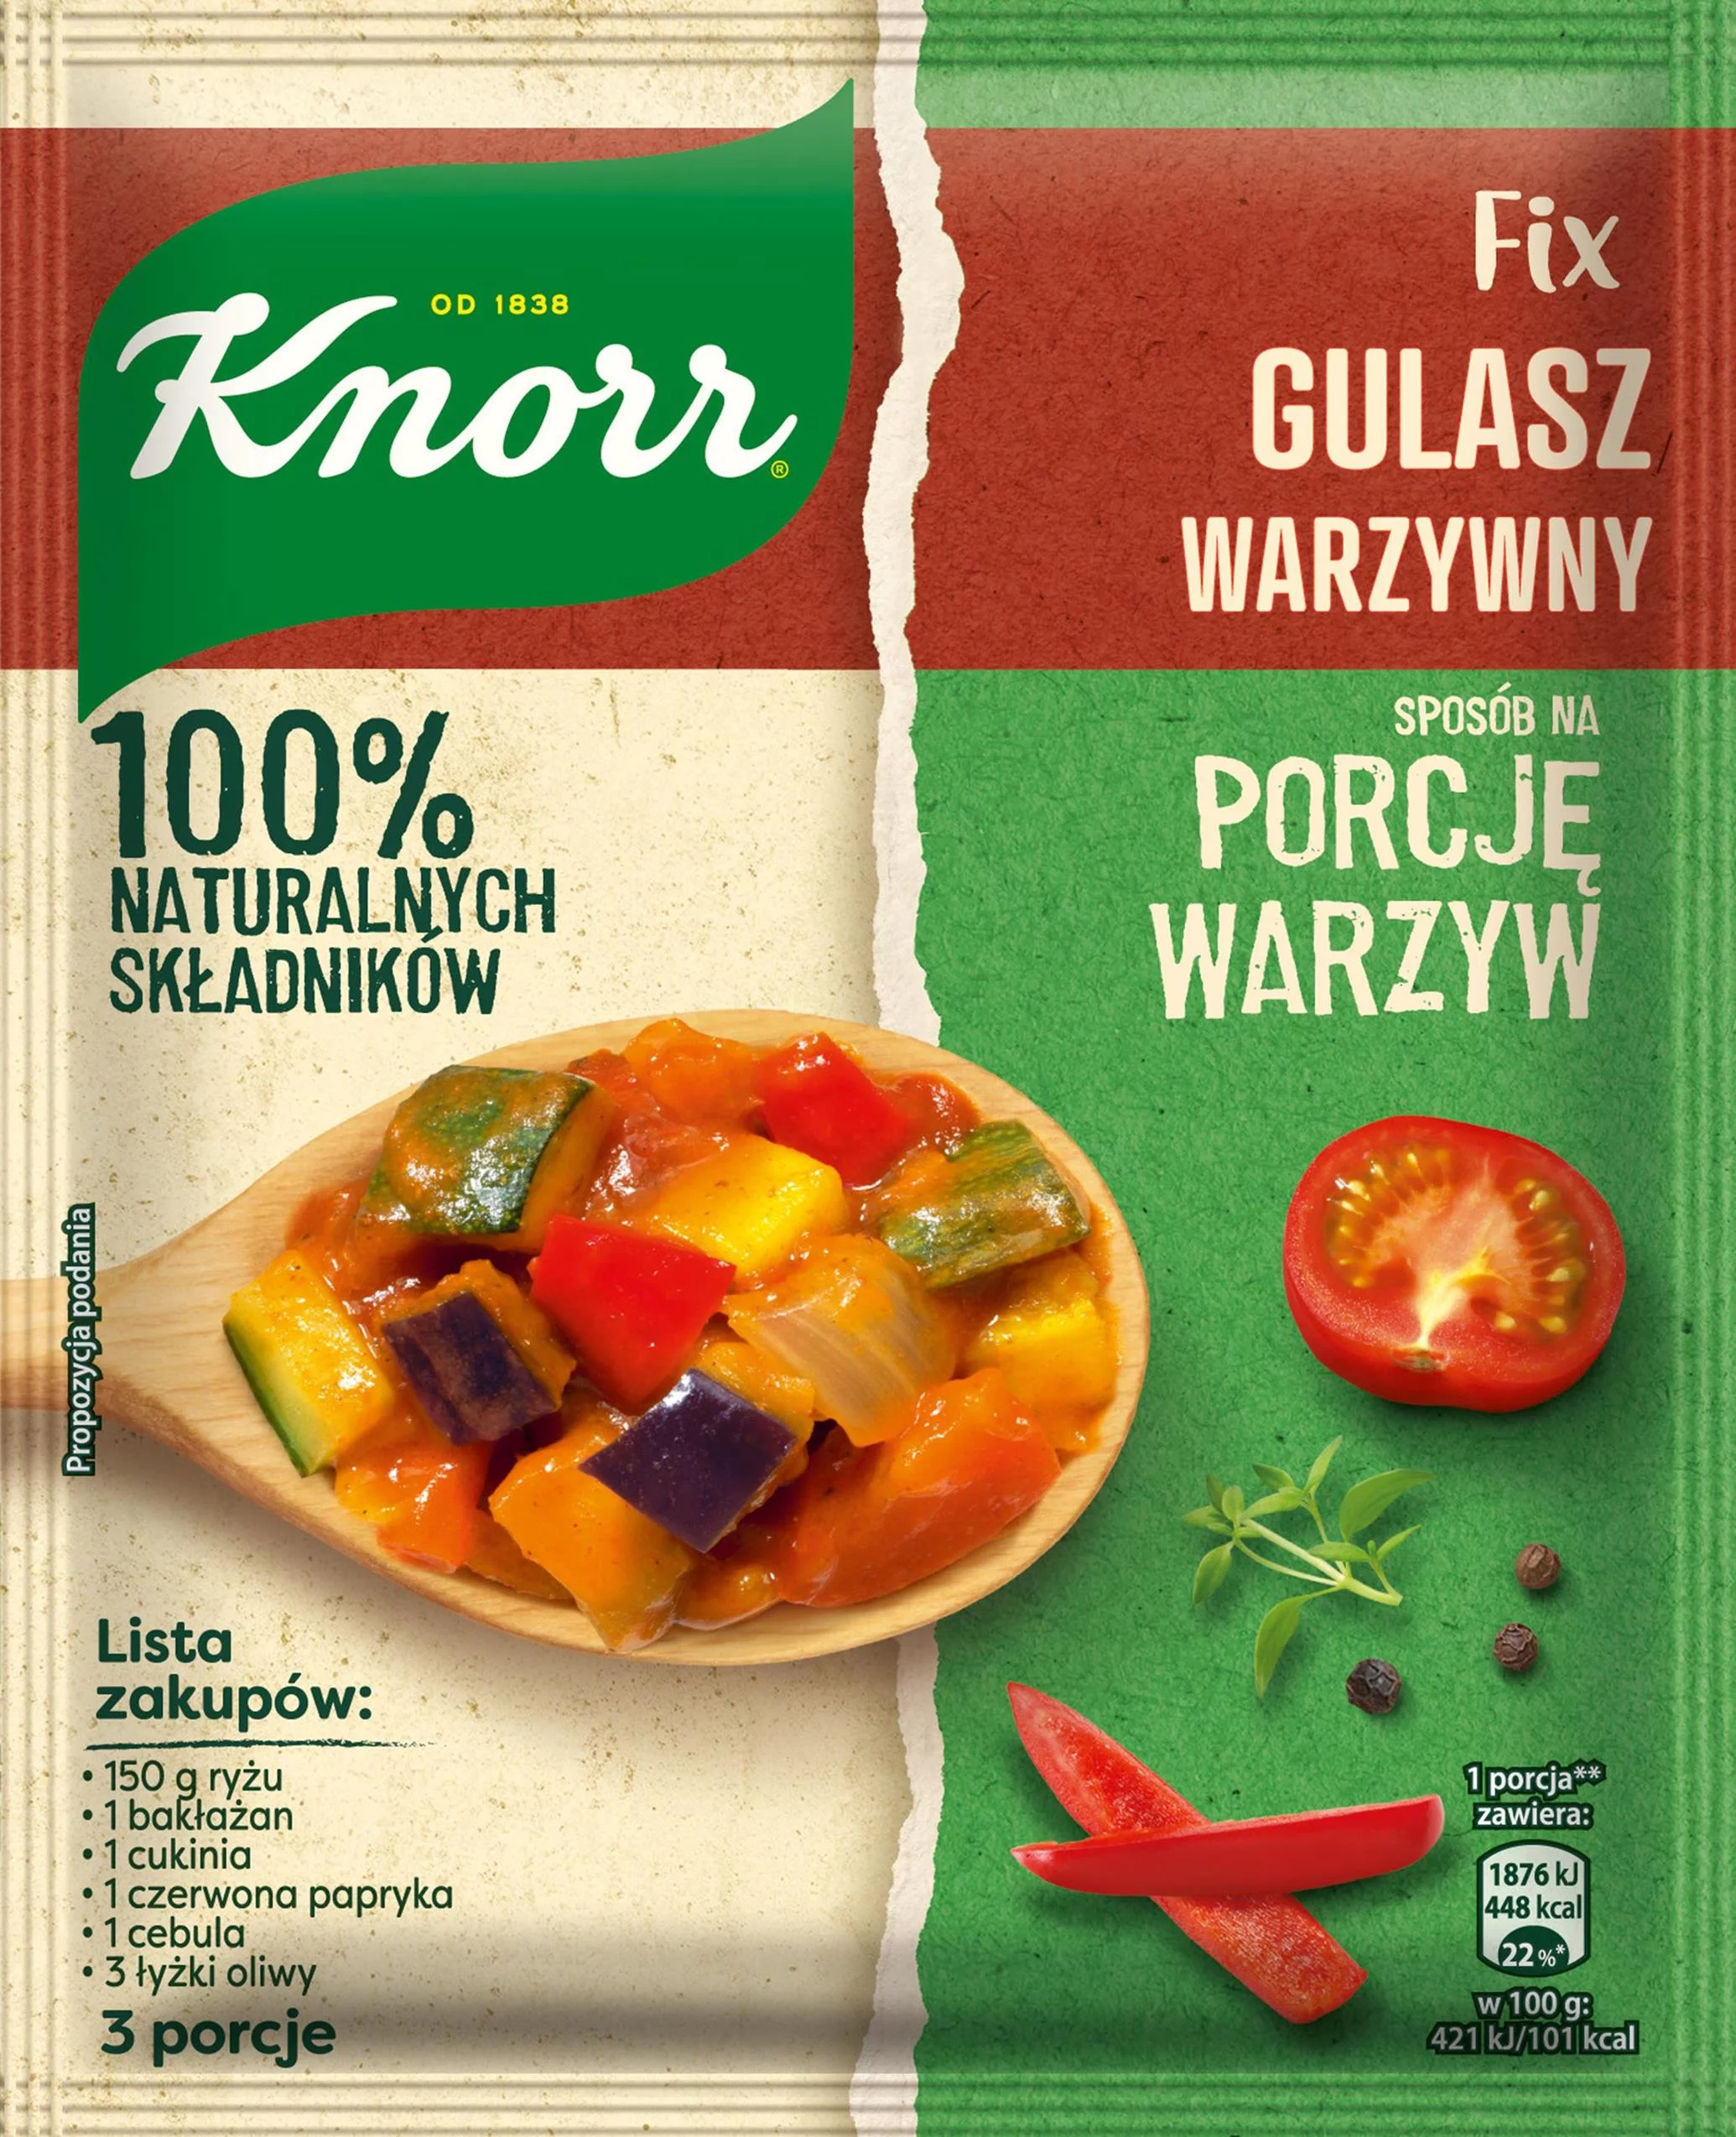 NOWOŚĆ! Fixy Sposób na porcję warzyw Knorr  Curry, gulasz i spaghetti z warzywnym twistem!